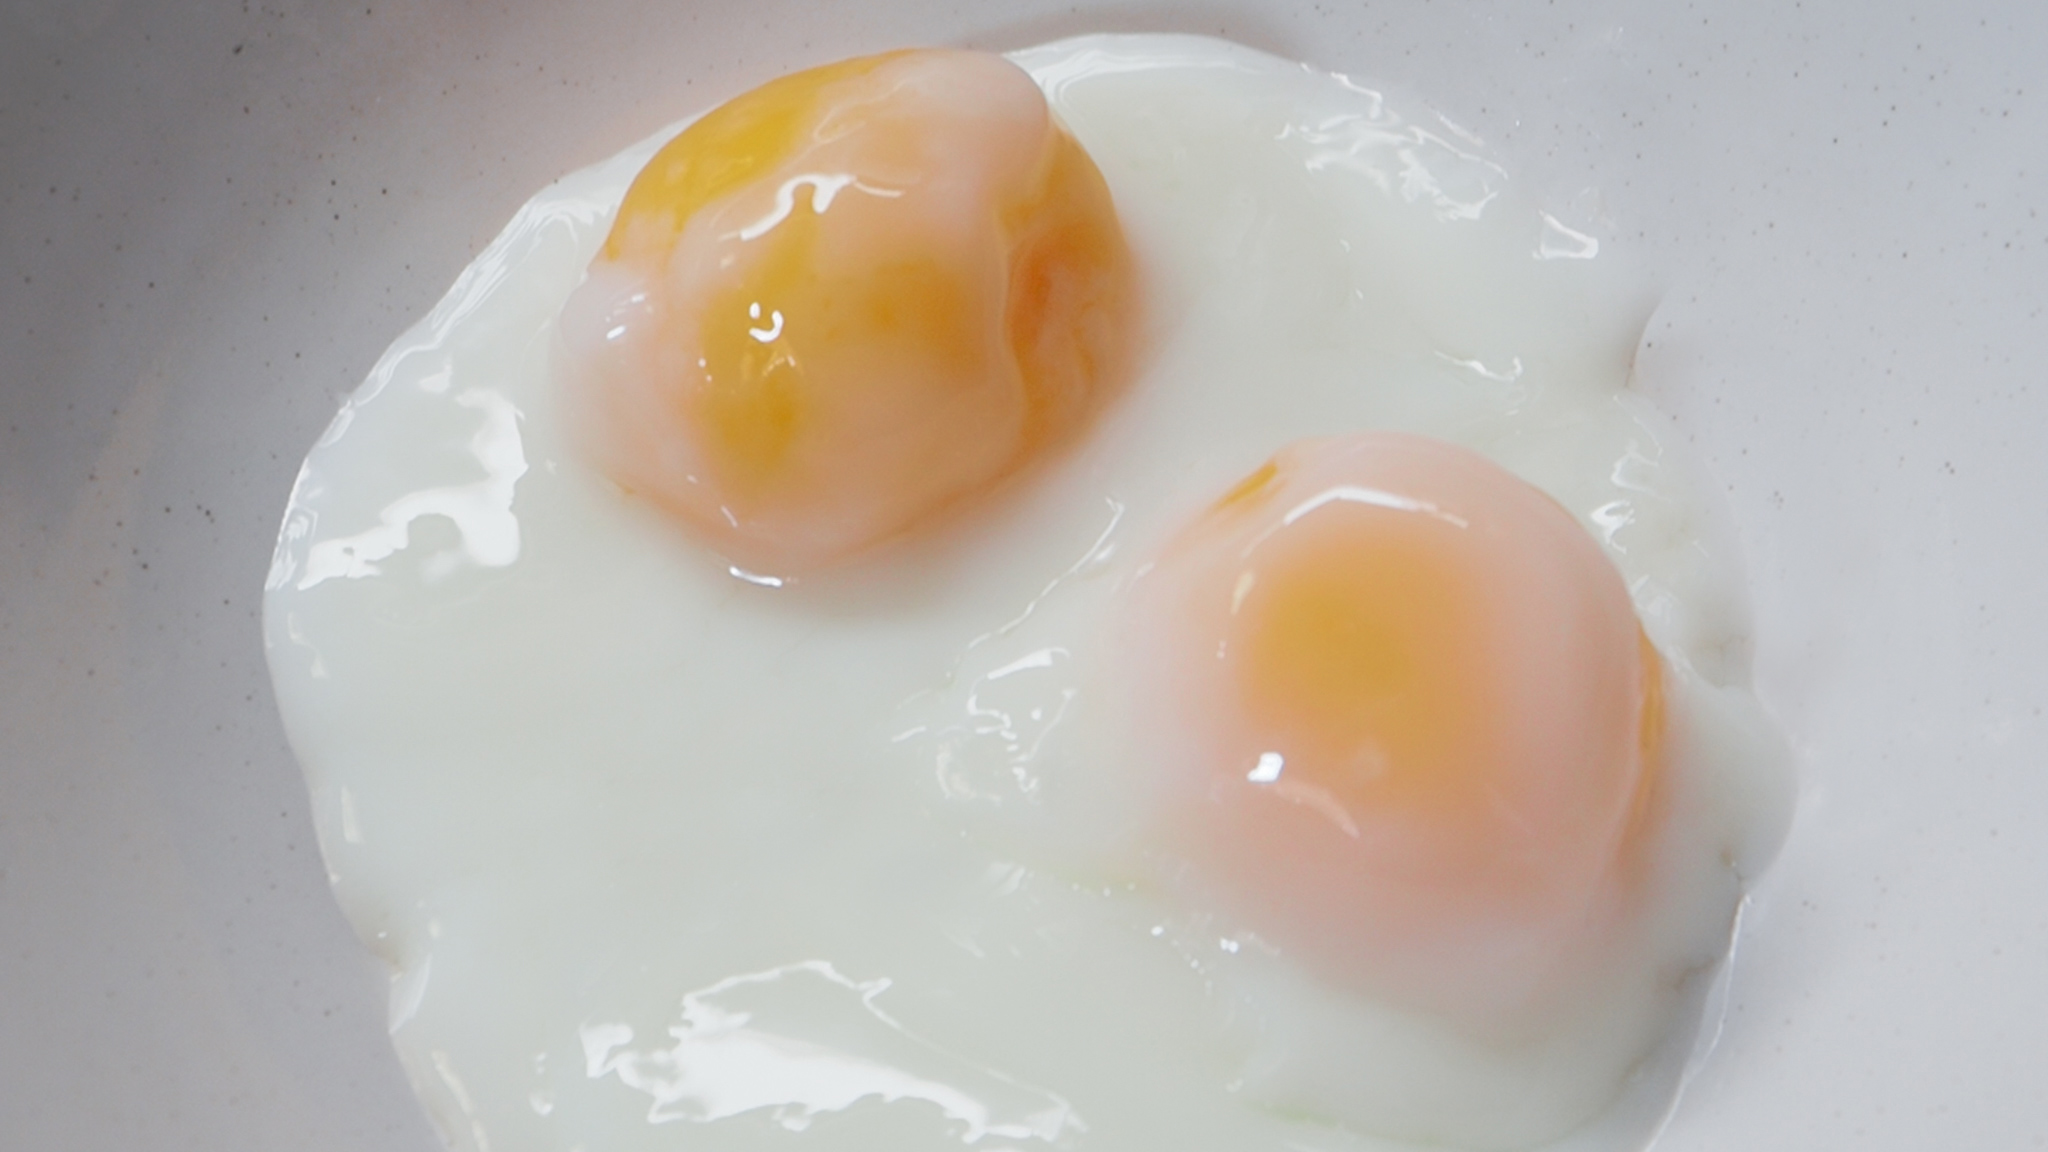 วิธีทำไข่ออนเซ็นง่ายๆ เมนูไข่ ไข่แดงหนึบๆ อร่อยมาก (ต้องต้มกี่นาที มาดูกัน) - Mai's Kitchen - Pantip